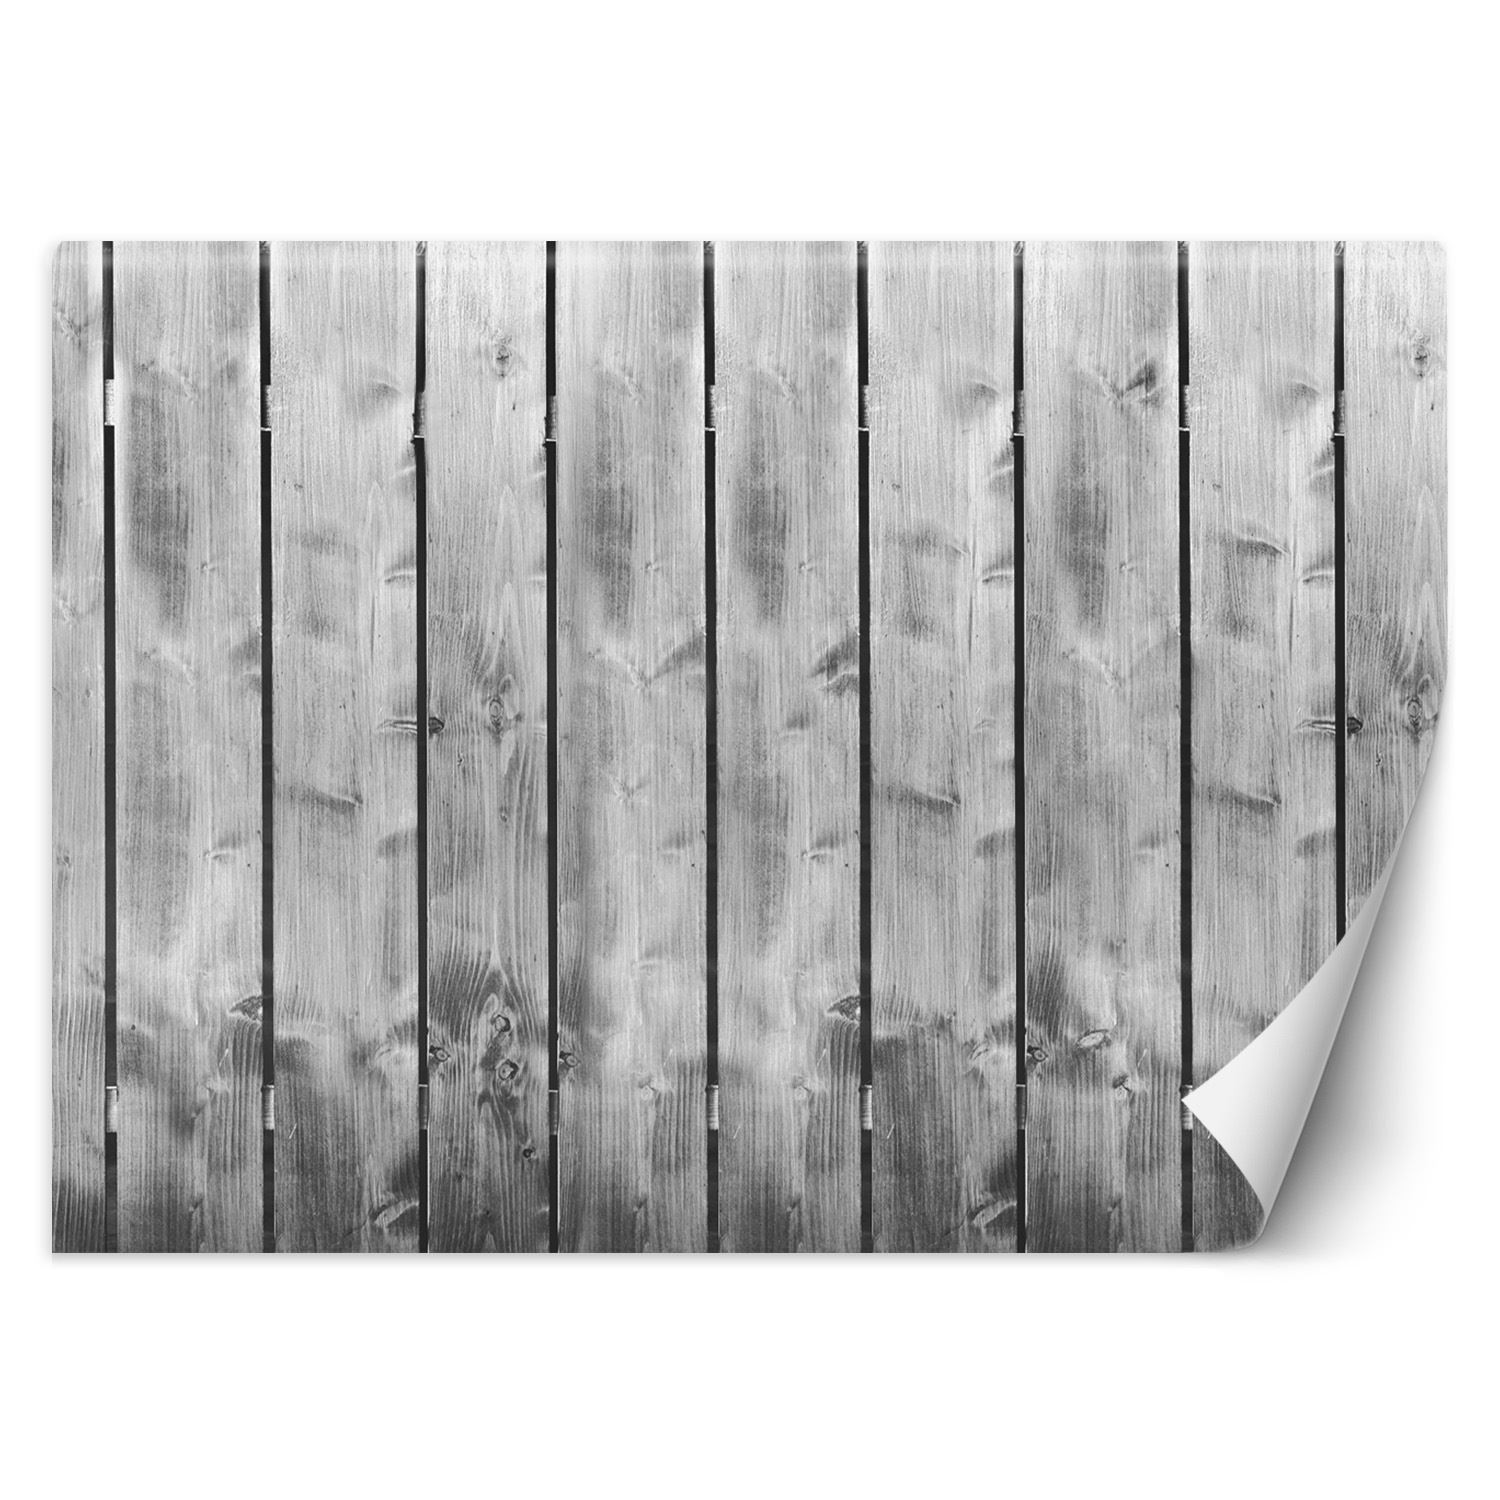 Trend24 – Behang – Plankpatroon – Behangpapier – Behang Woonkamer – Fotobehang – 250x175x2 cm – Incl. behanglijm